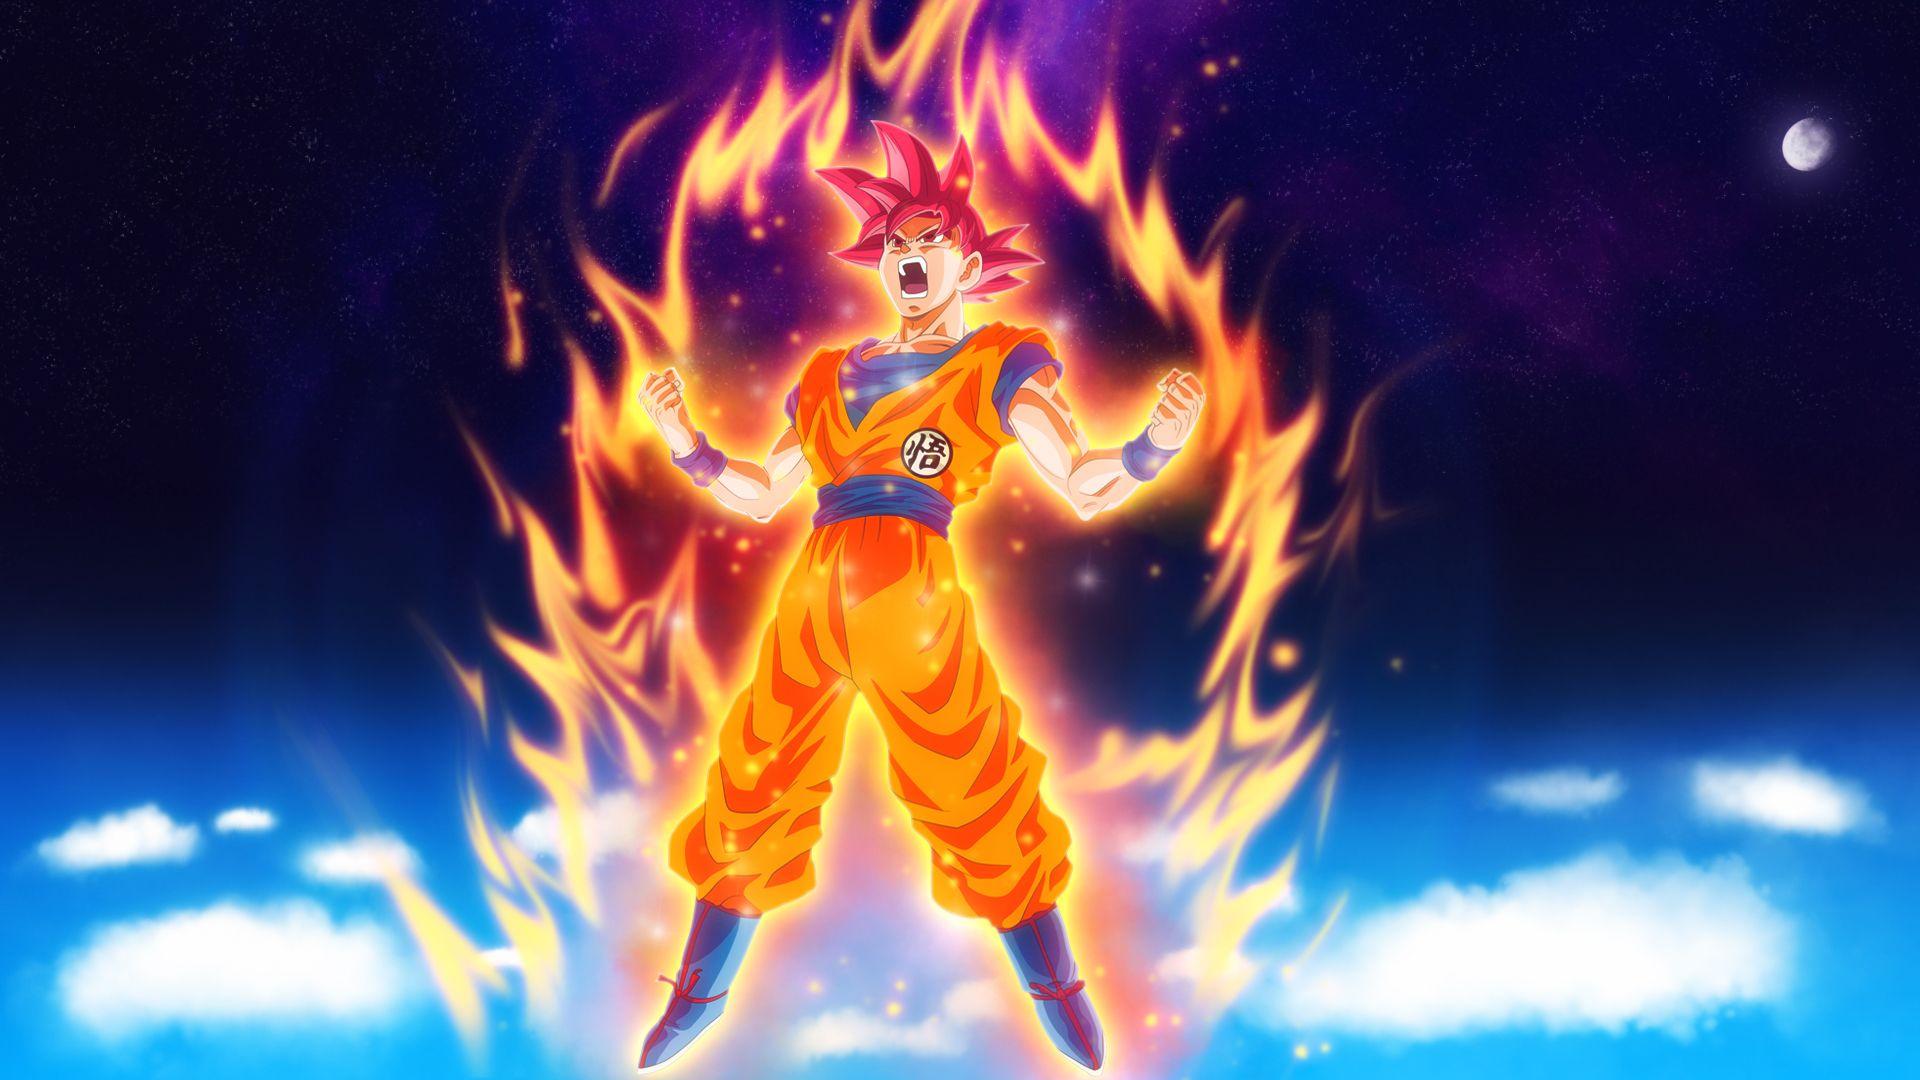 Dragon Ball Z Goku, HD Anime, 4k Wallpapers, Image, Backgrounds